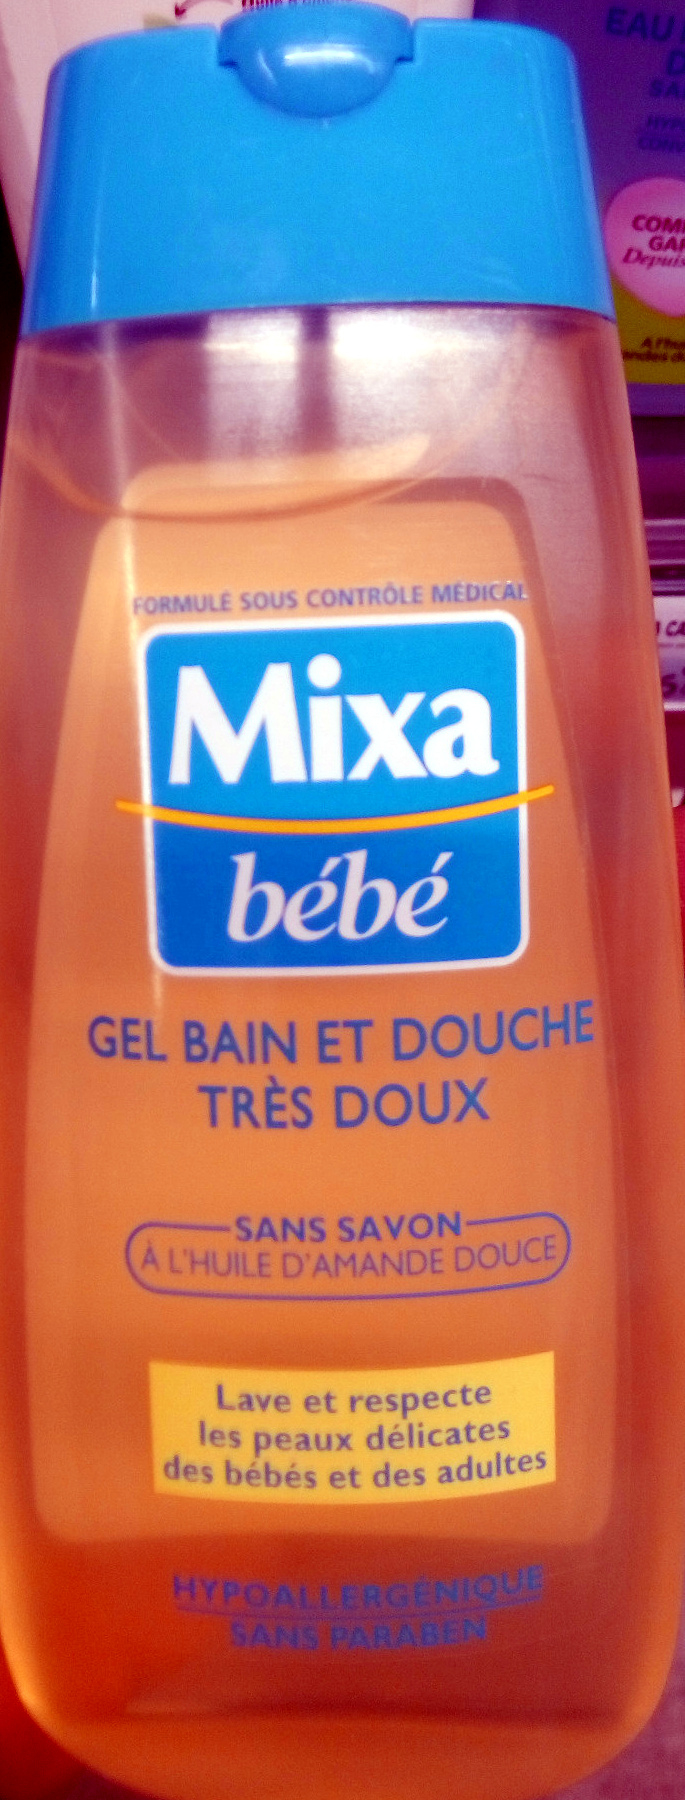 Gel Bain Et Douche Très Doux - Mixa - 200 Ml intérieur Gel Douche Mixa